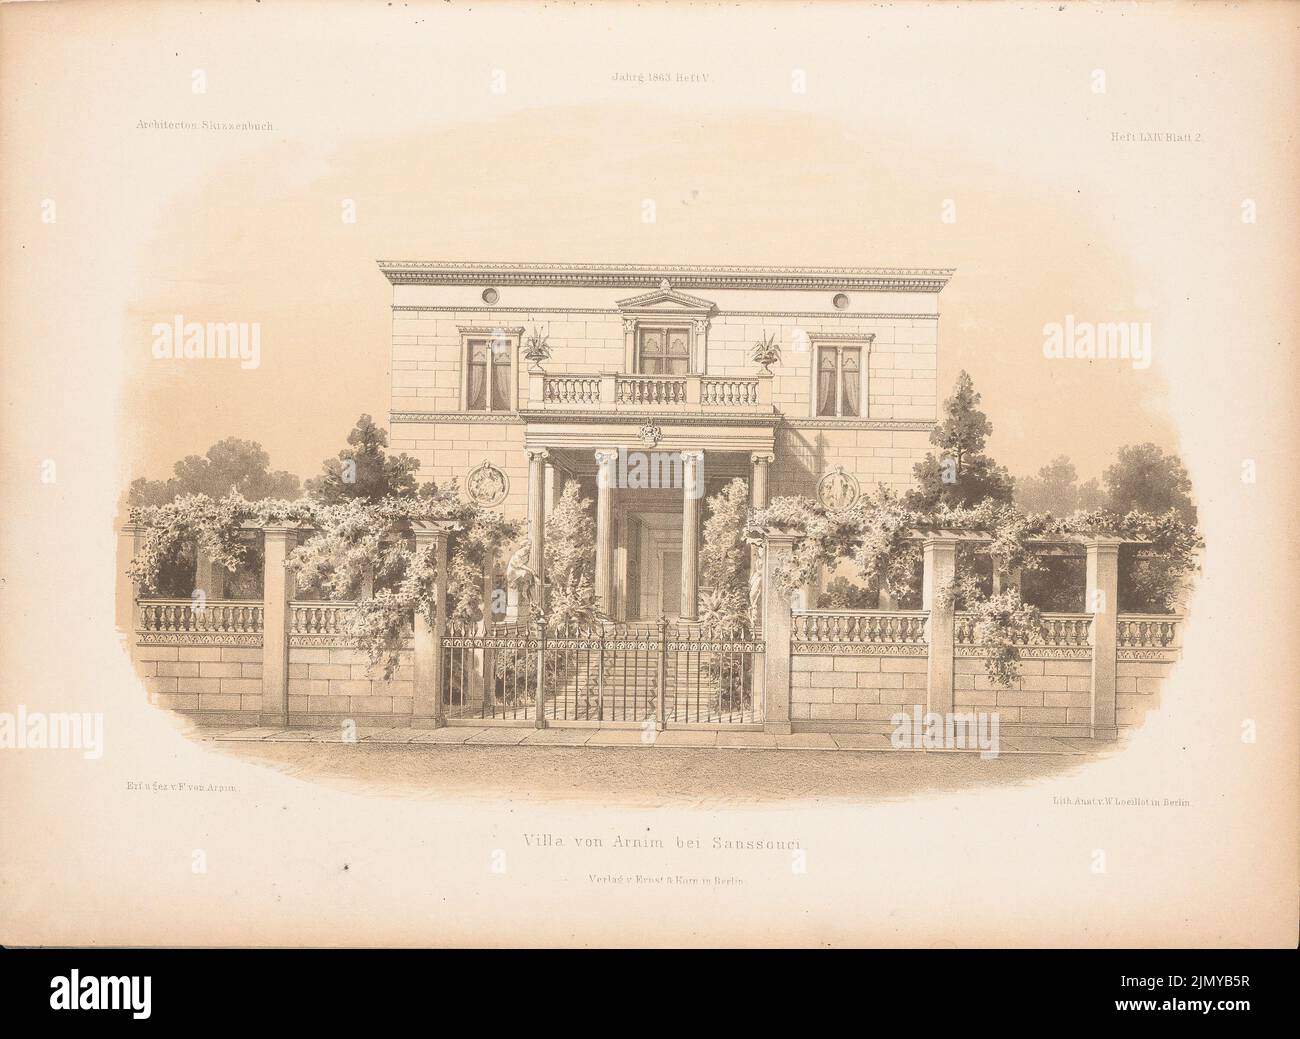 Arnim Ferdinand von (1814-1866), Villa von Arnim, Potsdam. (From: Architectural sketchbook, H. 65/6, 1863.) (1863-1863): View from the front. Stitch on paper, 25.7 x 35.2 cm (including scan edges) Stock Photo